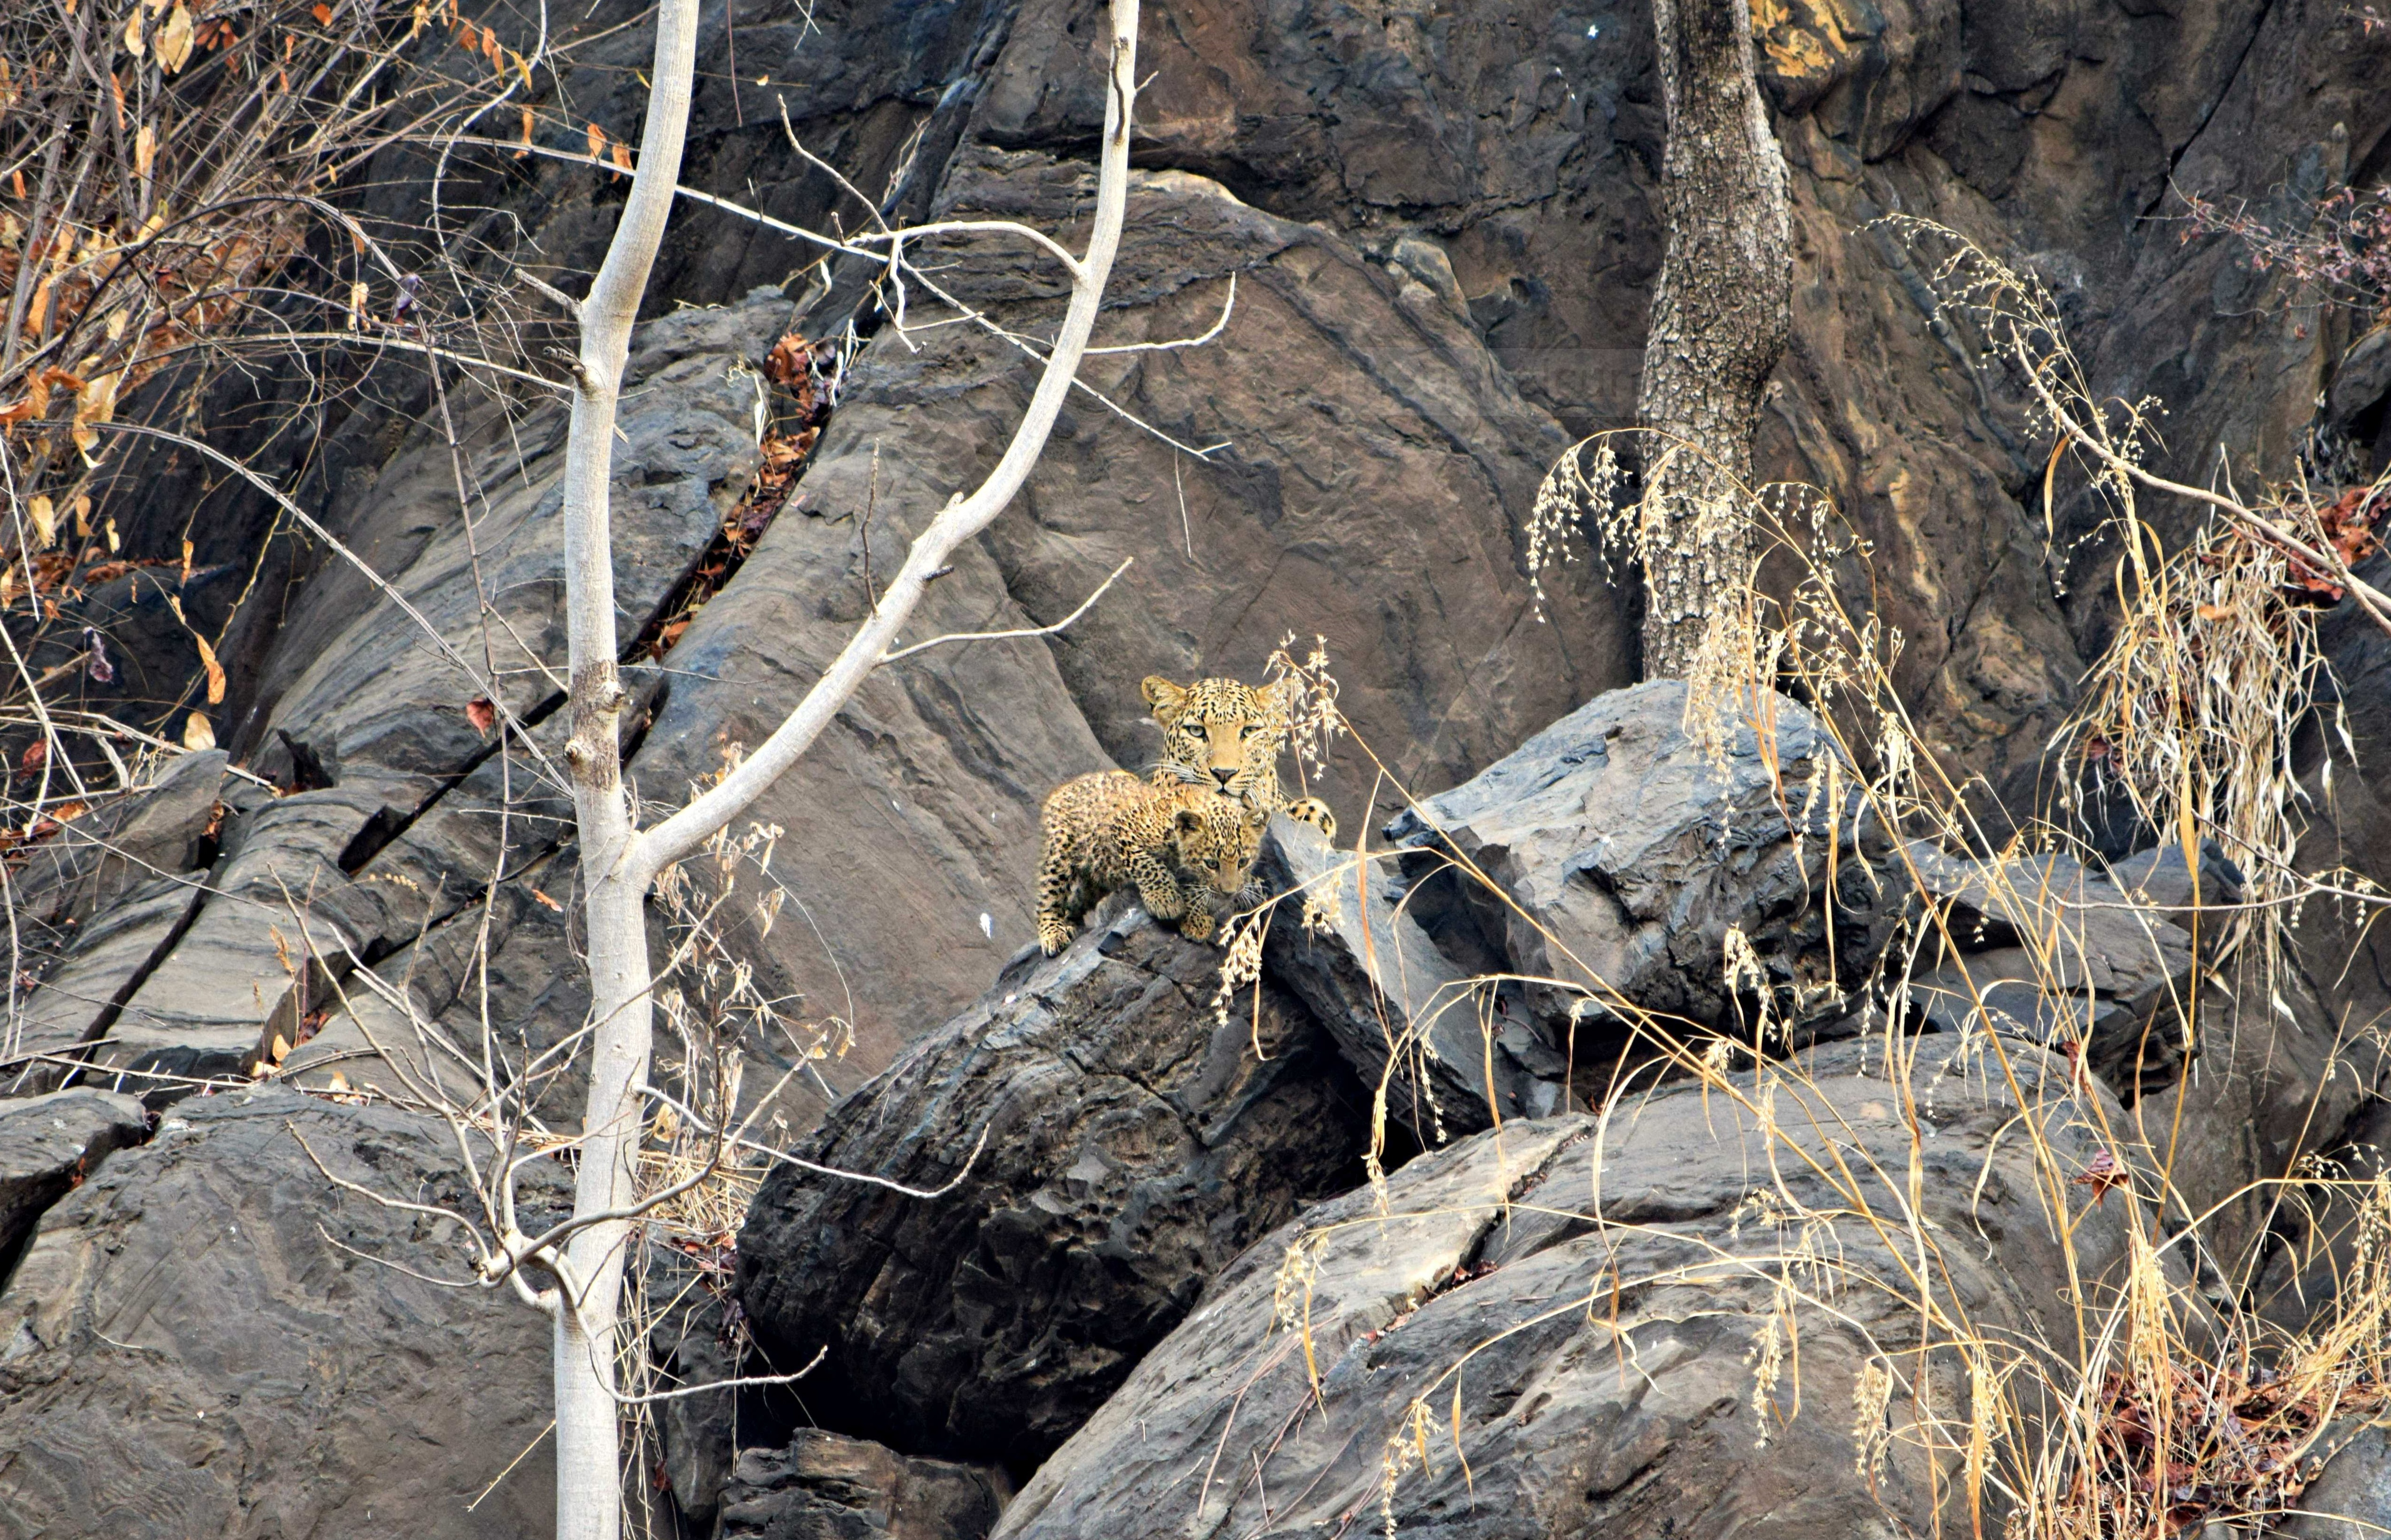 Crouching leopard, hidden cubs